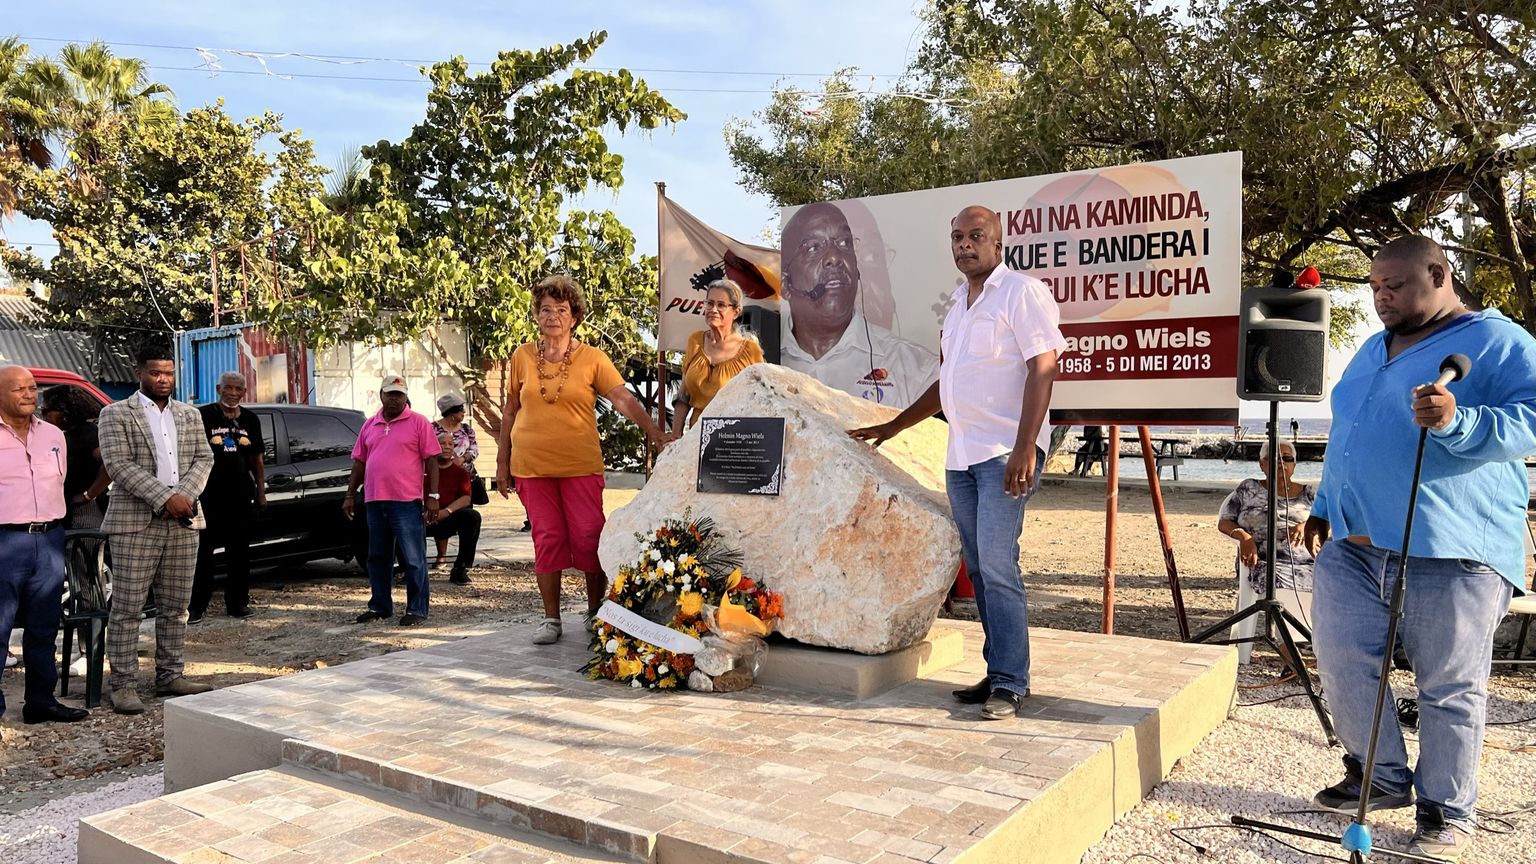 NOS | Vermoorde Curaçaose politicus Wiels krijgt monument, ‘maar boek nog niet gesloten’